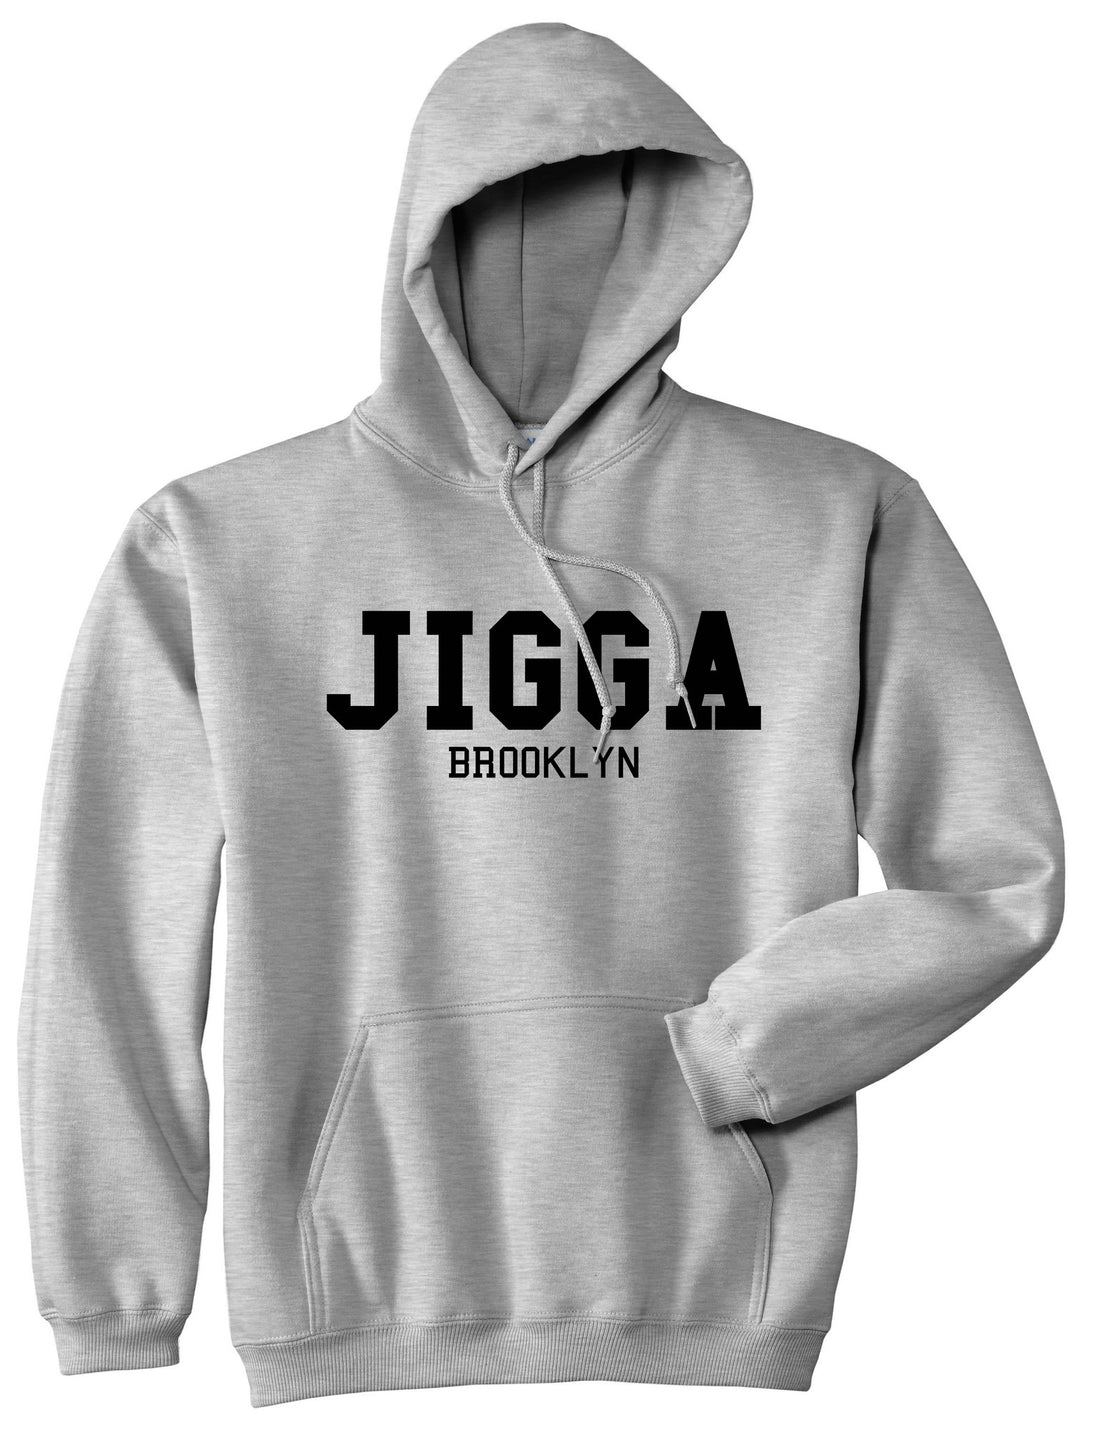 Jigga Brooklyn Pullover Hoodie Hoody in Grey by Kings Of NY